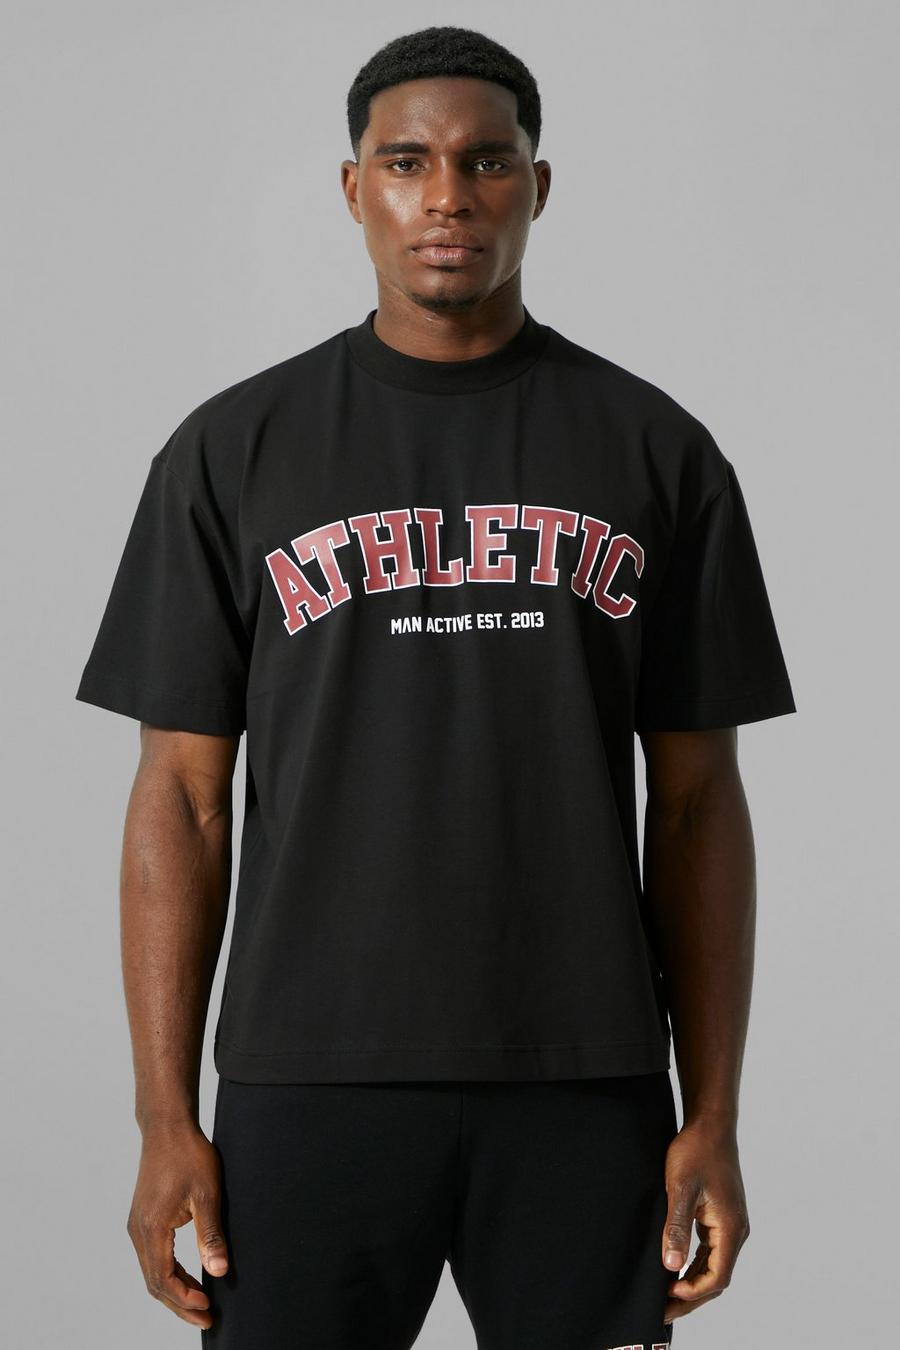 Man Active kastiges Gym Athletic T-Shirt, Black schwarz